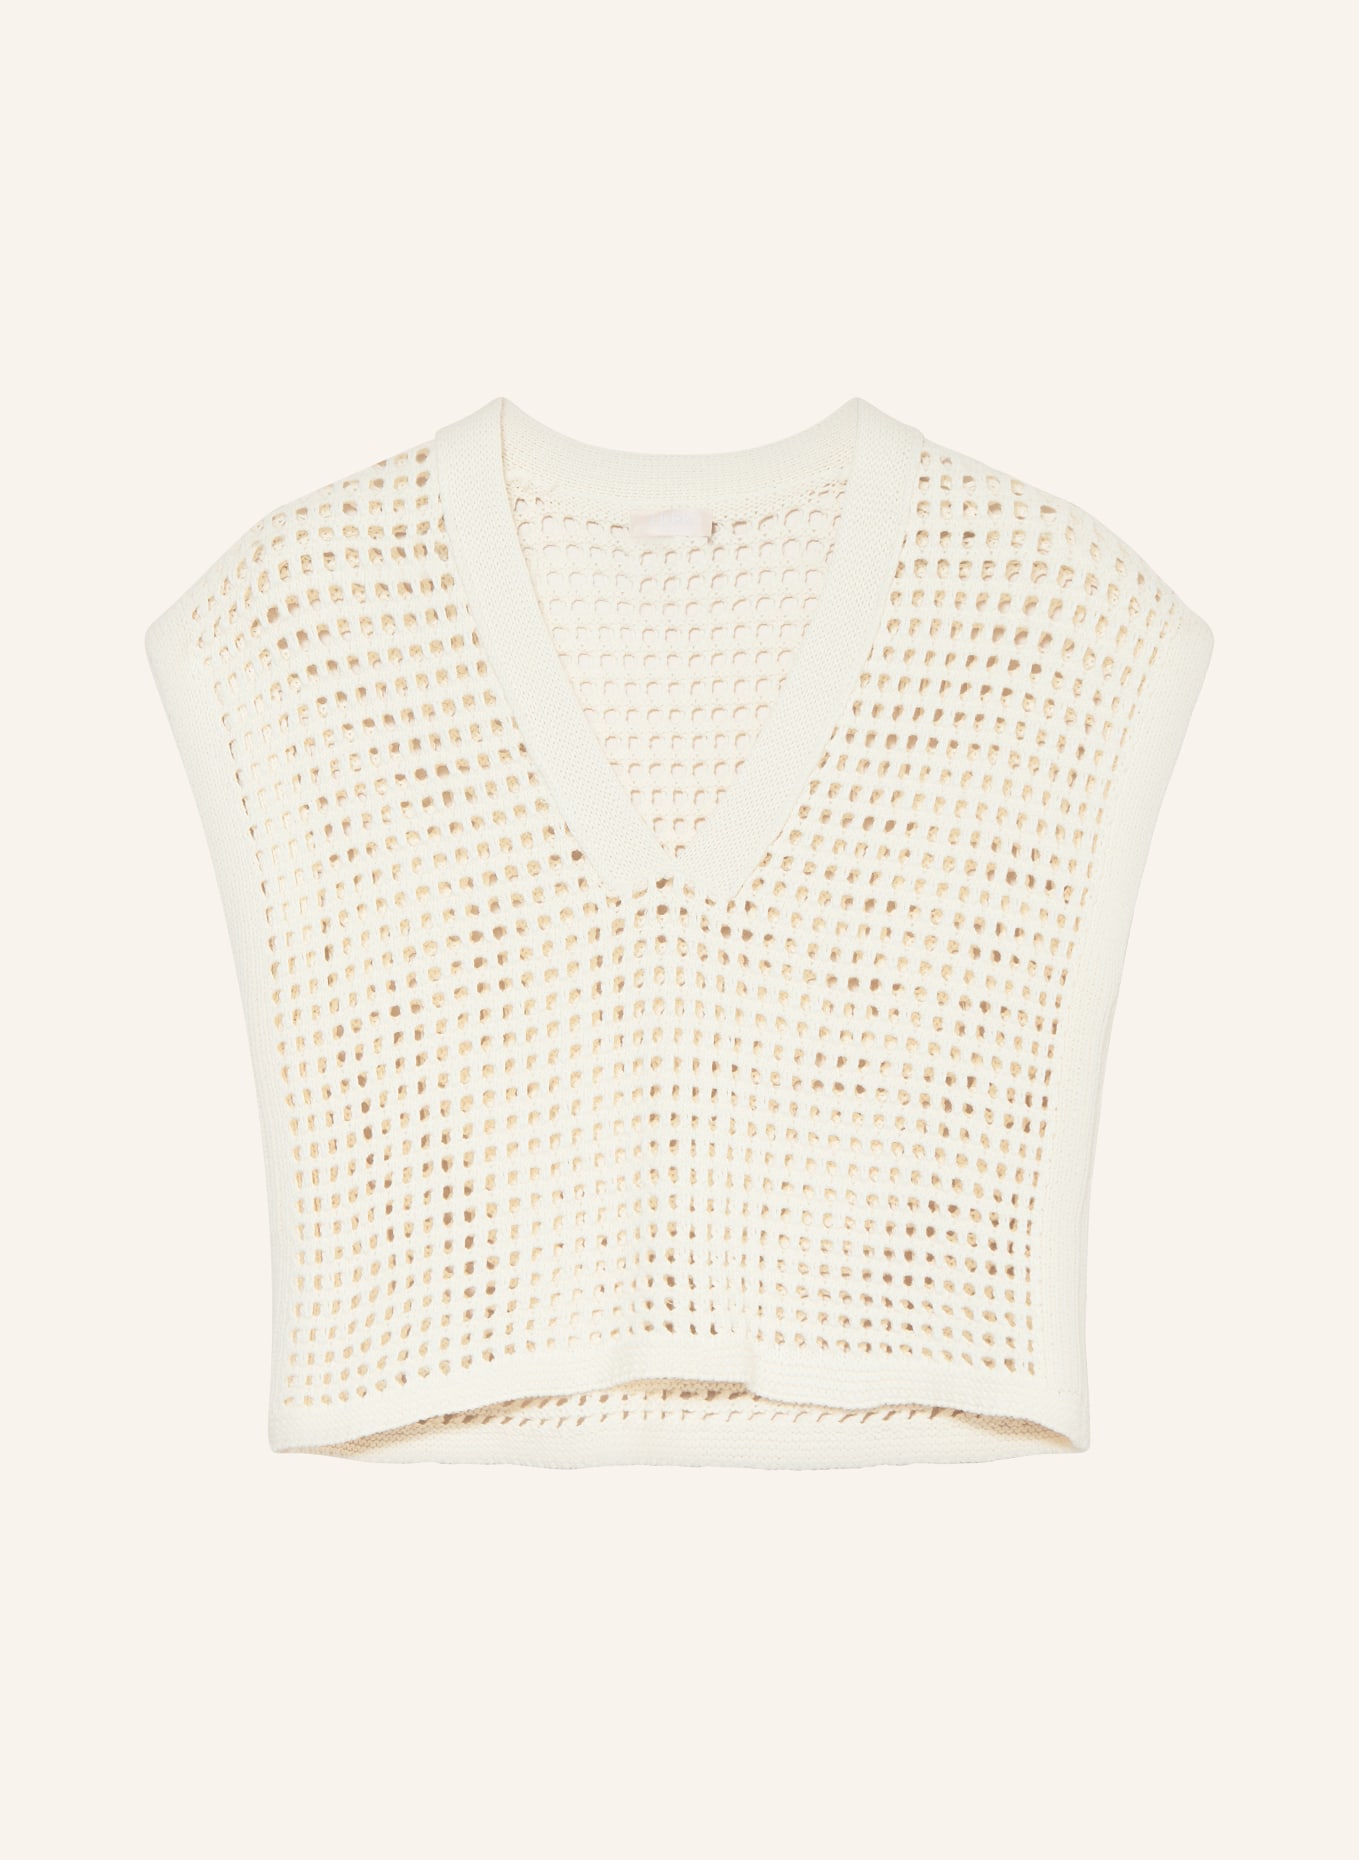 LIU JO Sweater vest, Color: ECRU (Image 1)